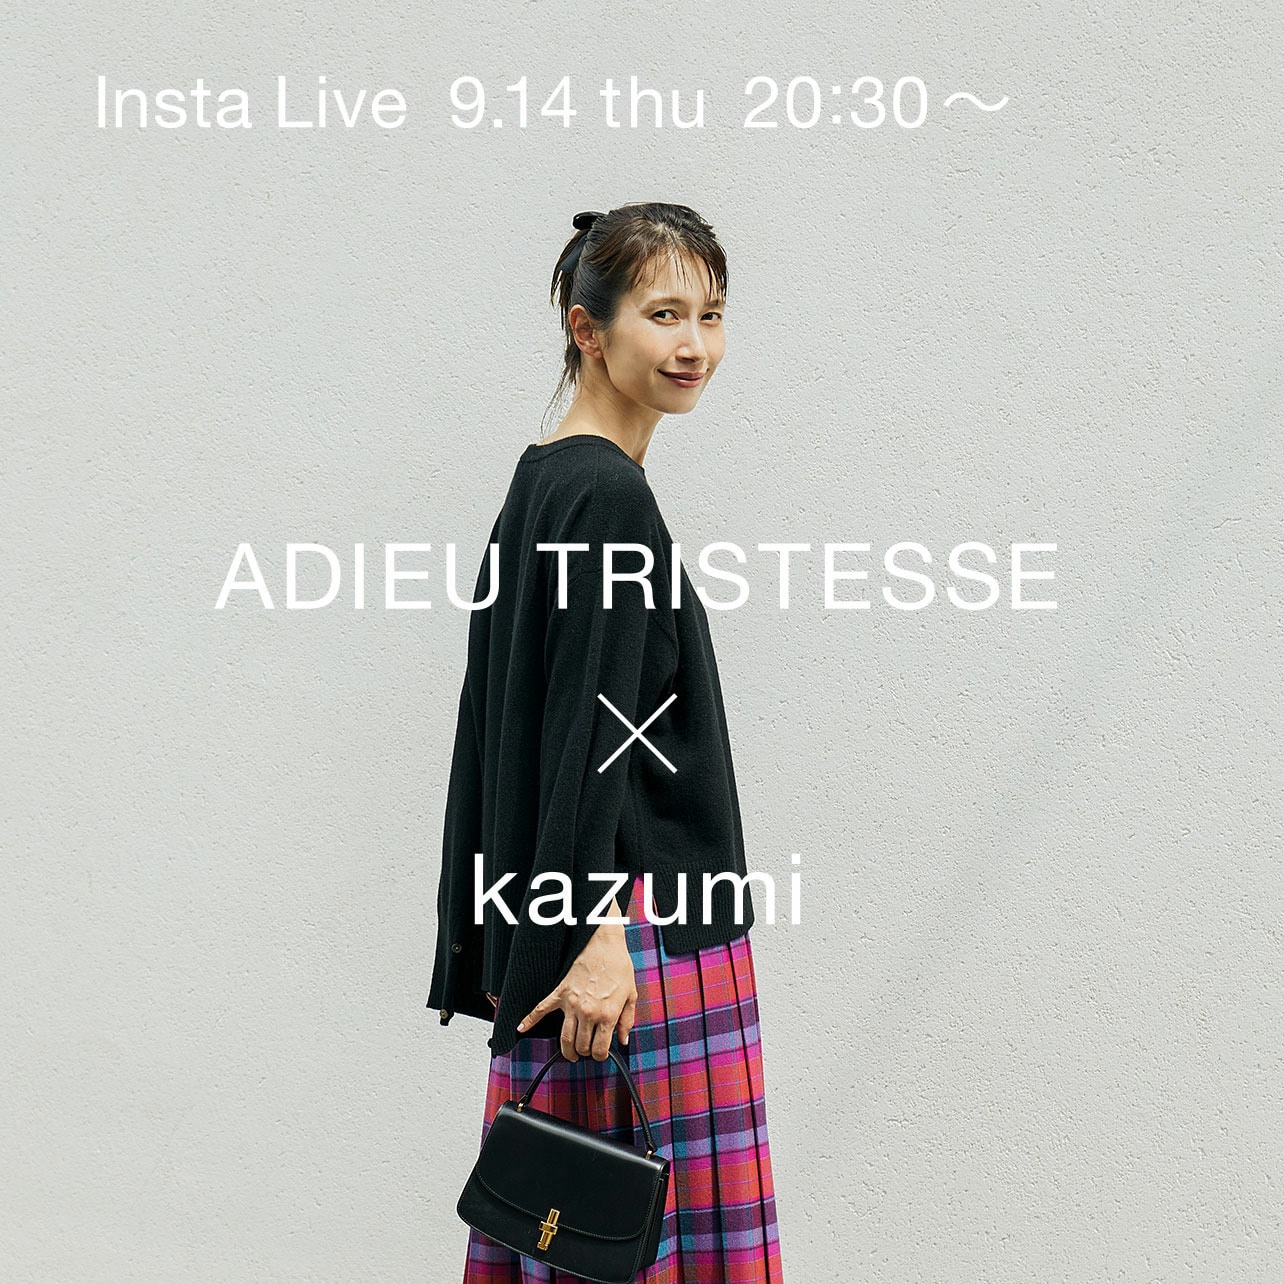 ADIEU TRISTESSE × kazumi Insta Live